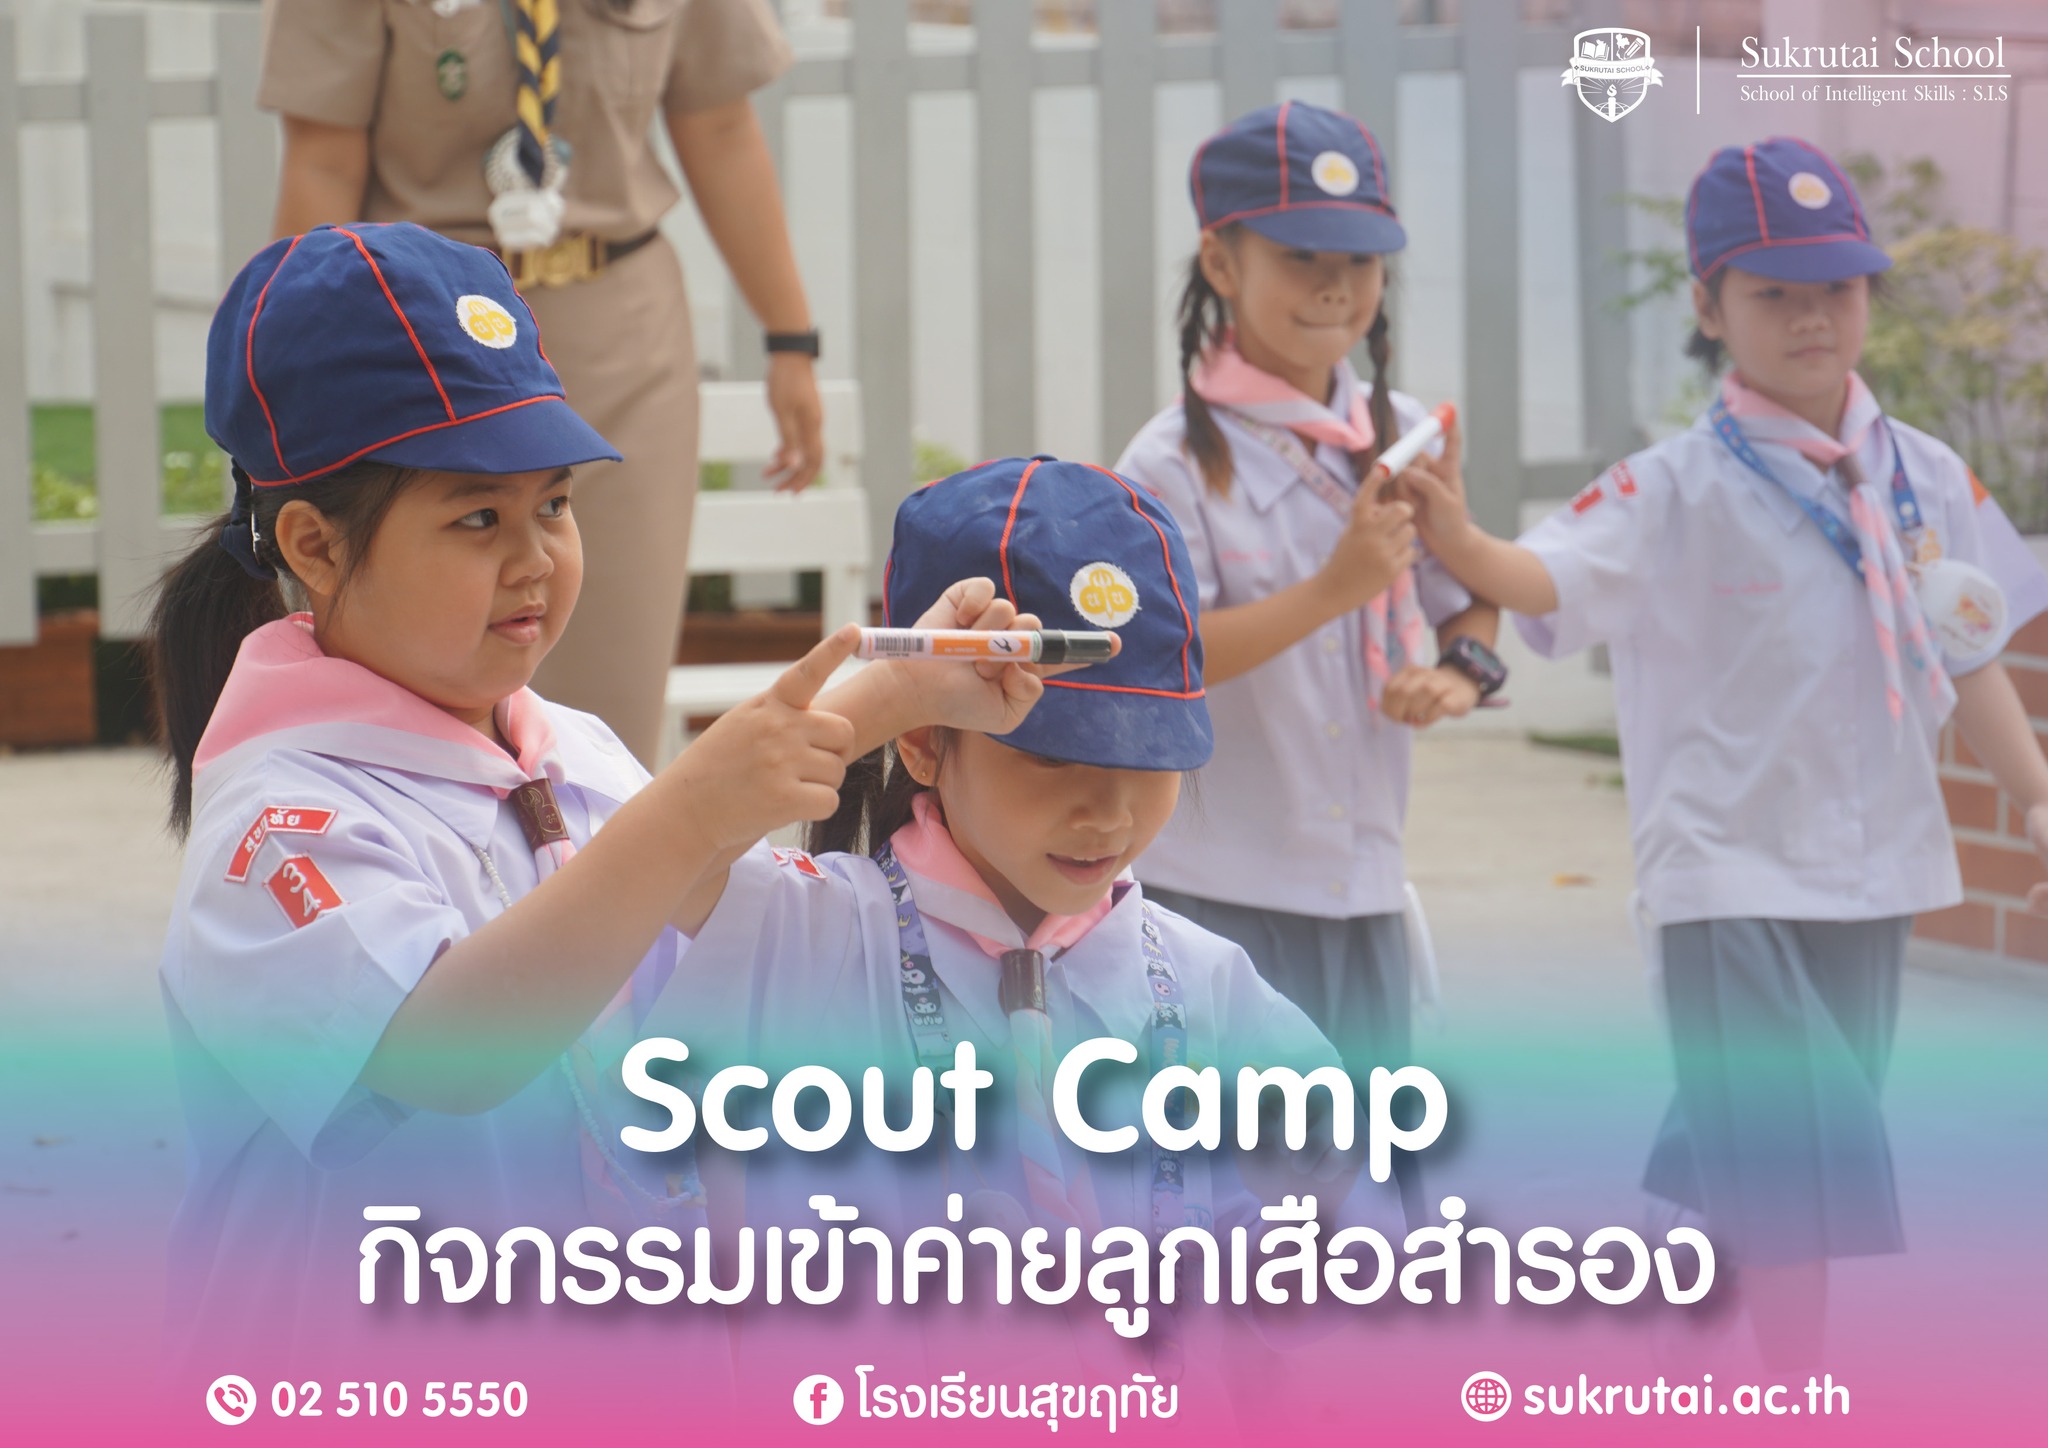 Scout Camp กิจกรรมเข้าค่ายลูกเสือสำรอง ประจำปีการศึกษา 2566